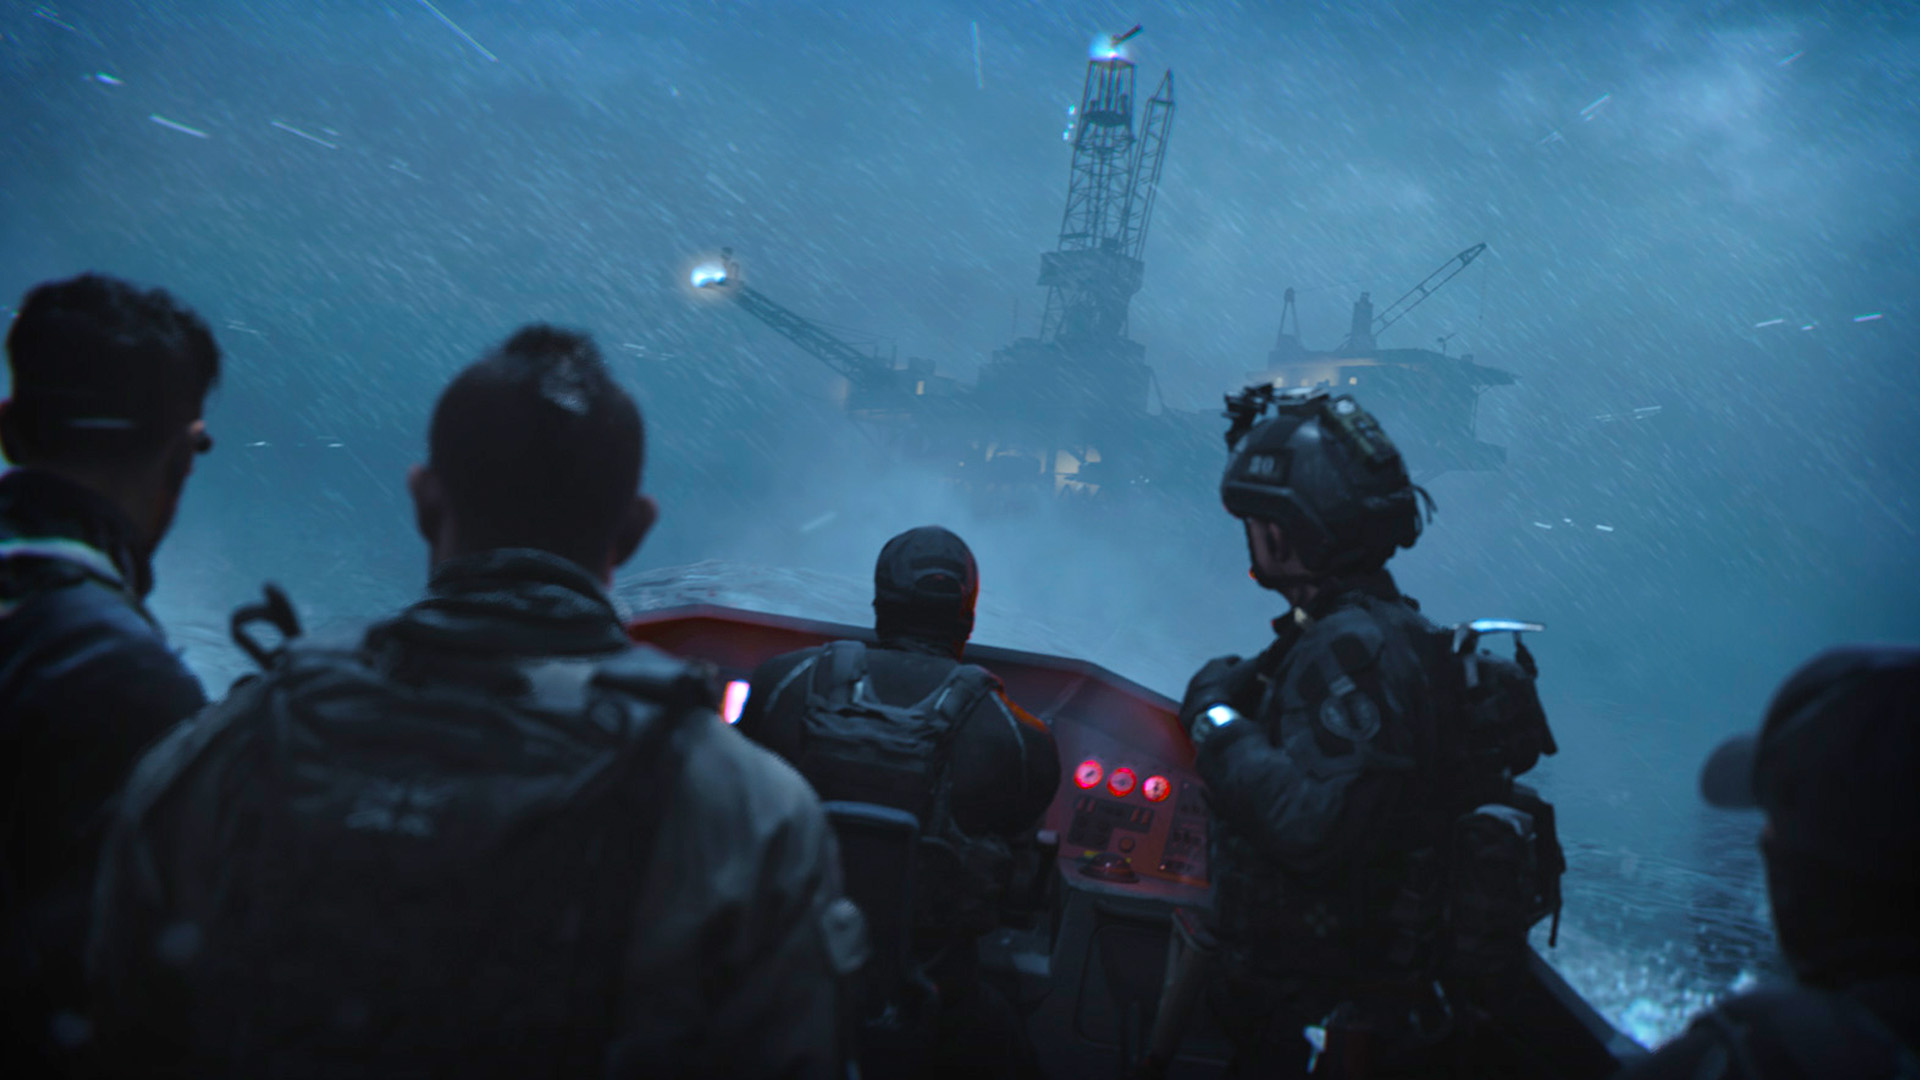 Дата выхода Call of Duty Warzone 2: пятеро солдат едут к кораблю на маленькой лодке ночью